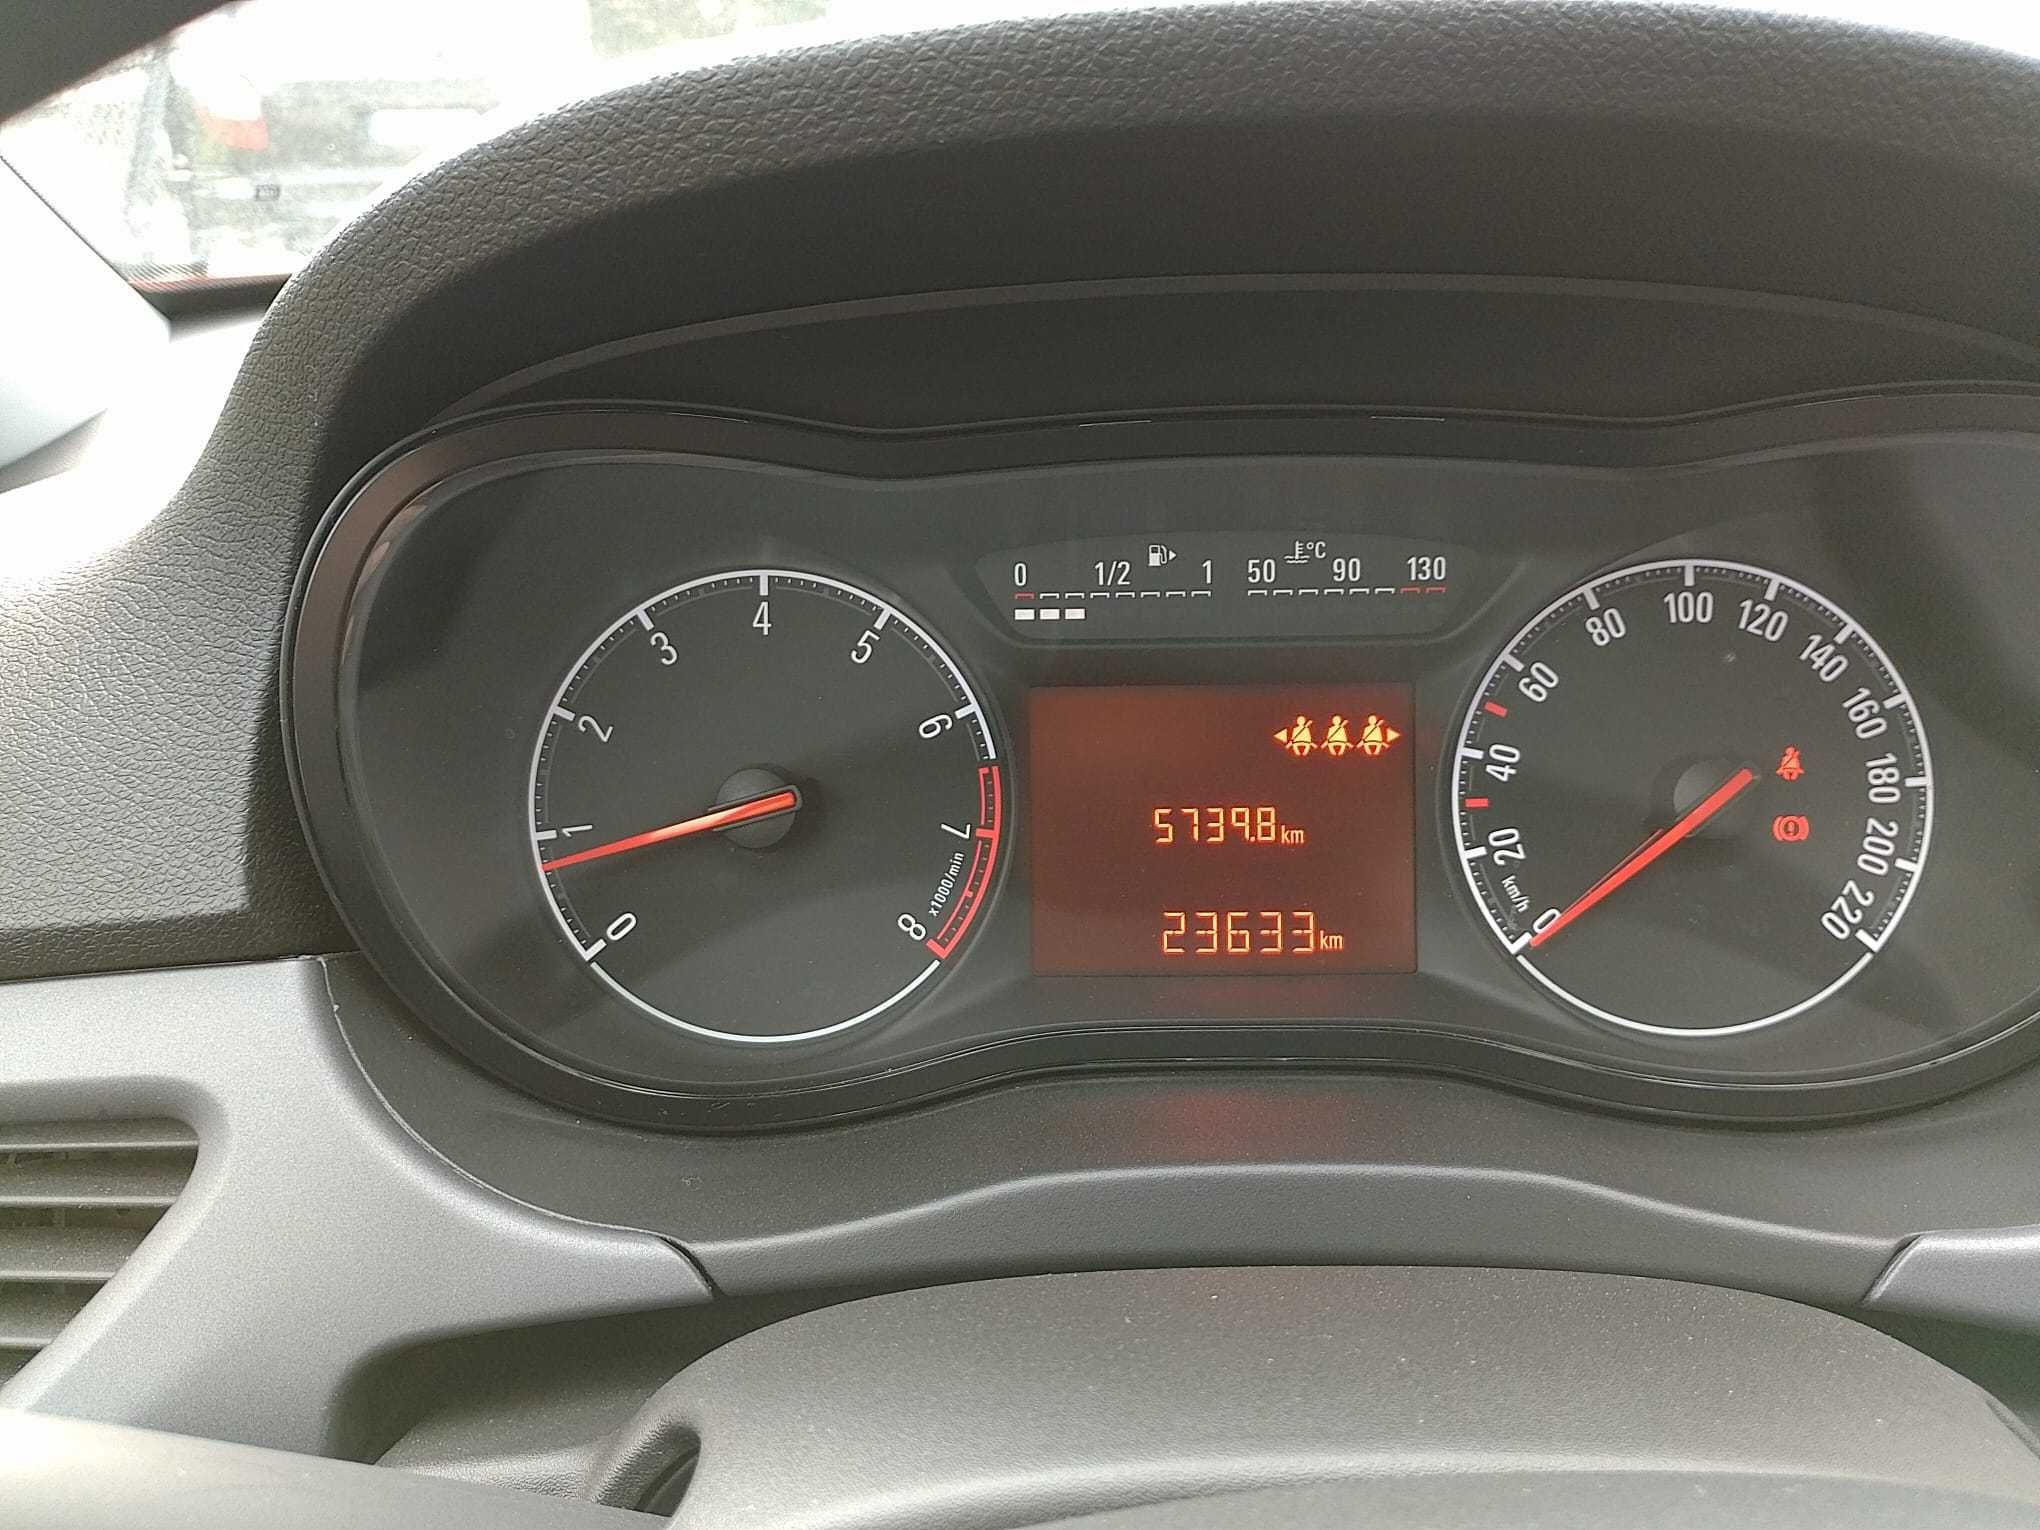 Opel Corsa E, benzyna 1.2, 2015r, niski przebieg 23tys km